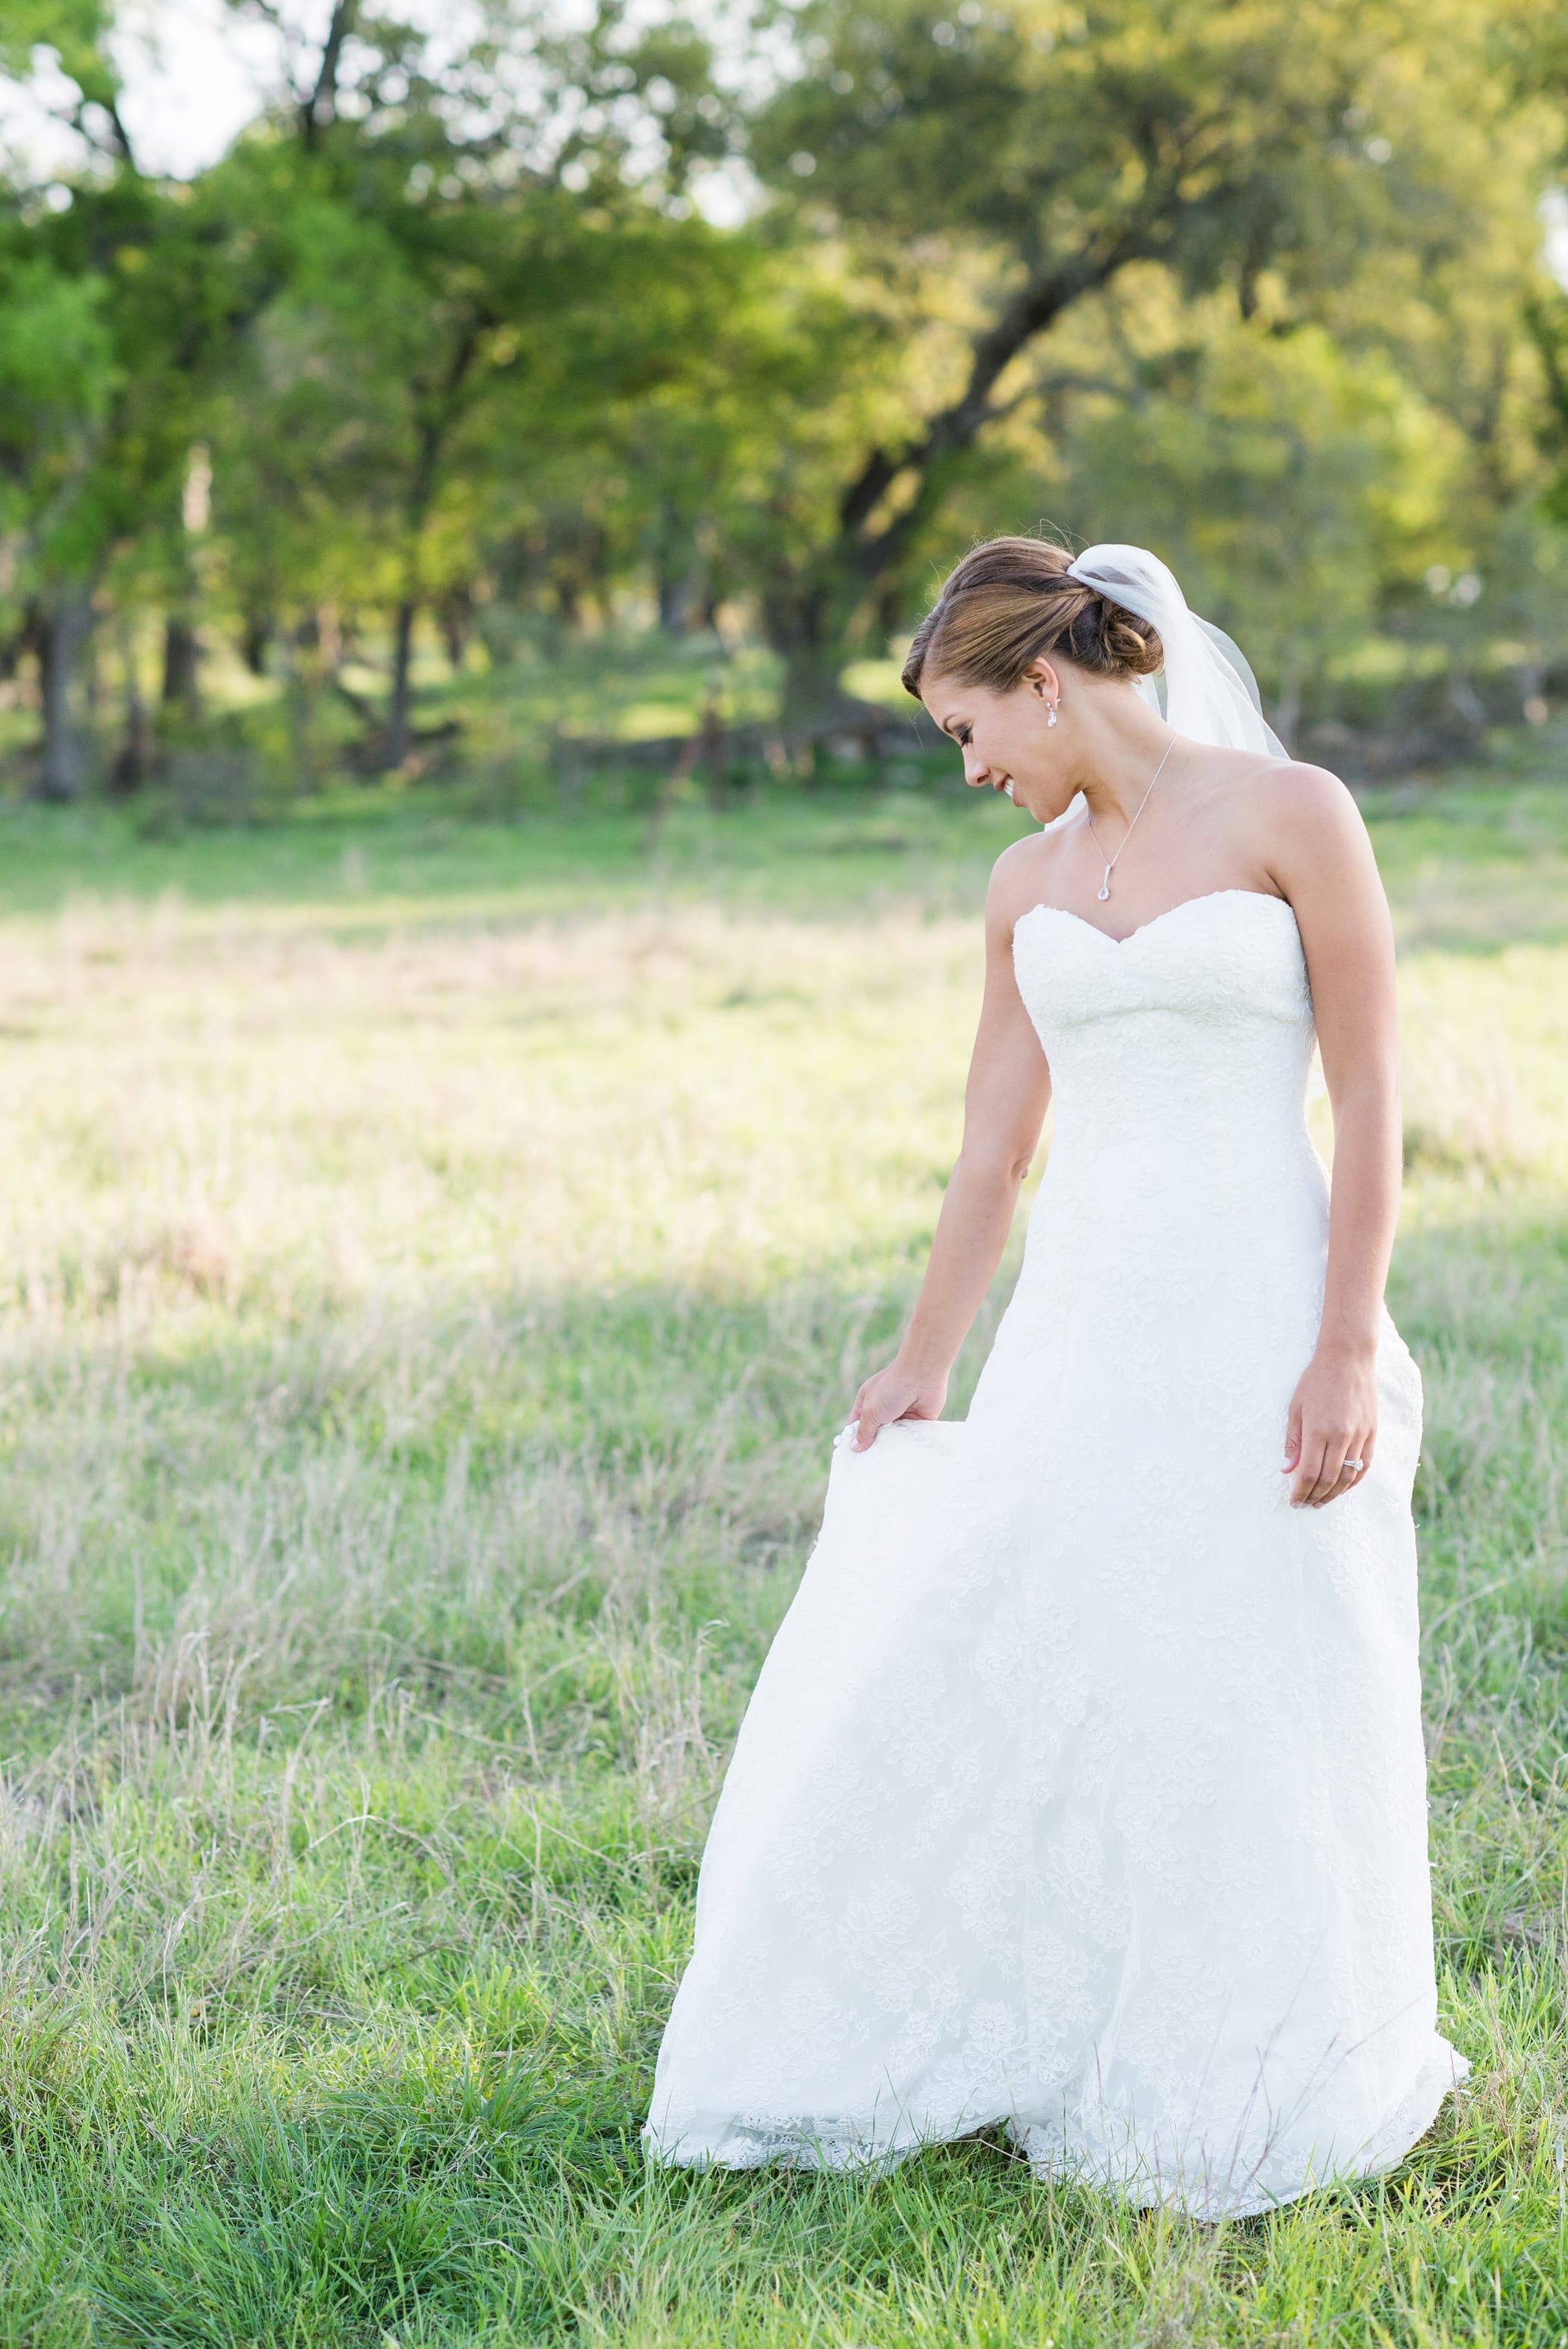 Kagan + Danielle • Marquardt Ranch Wedding - Michelle & Logan Photo + Films